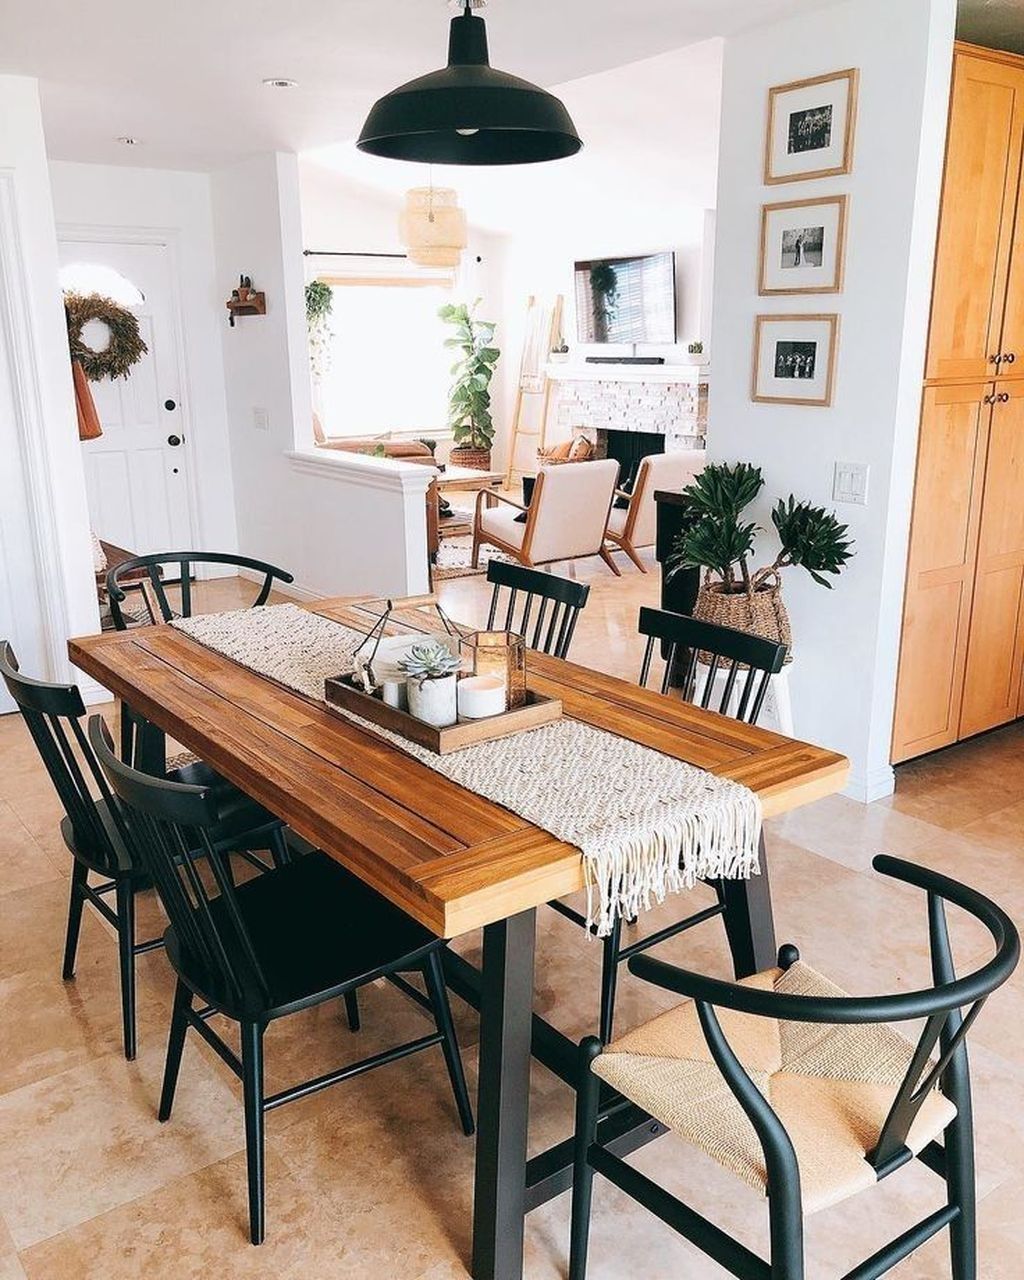 Popular Rustic Farmhouse Style Ideas For Dining Room Decor 21   HMDCRTN